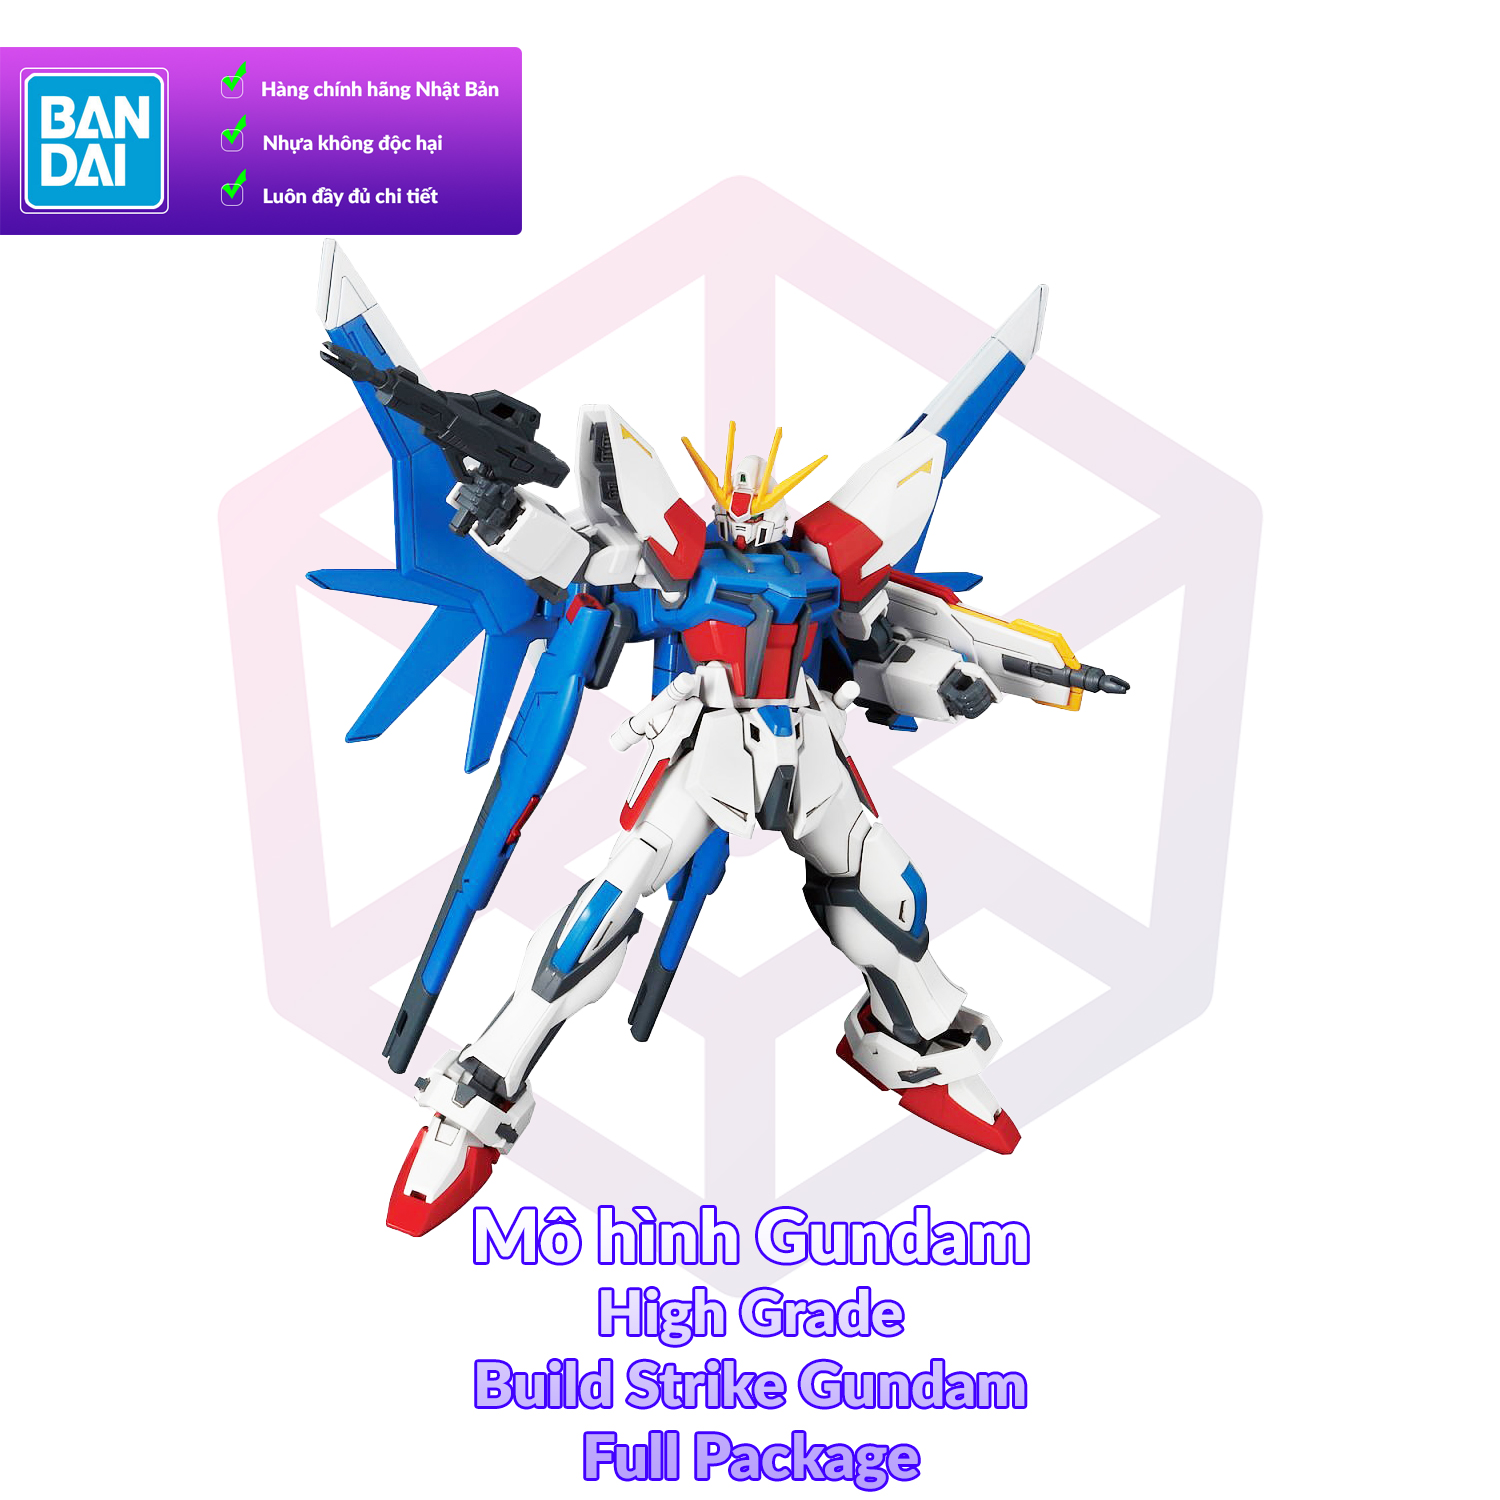 Mô Hình Lắp Ráp Gundam Bandai HGBF 001 Build Strike Gundam Full Package